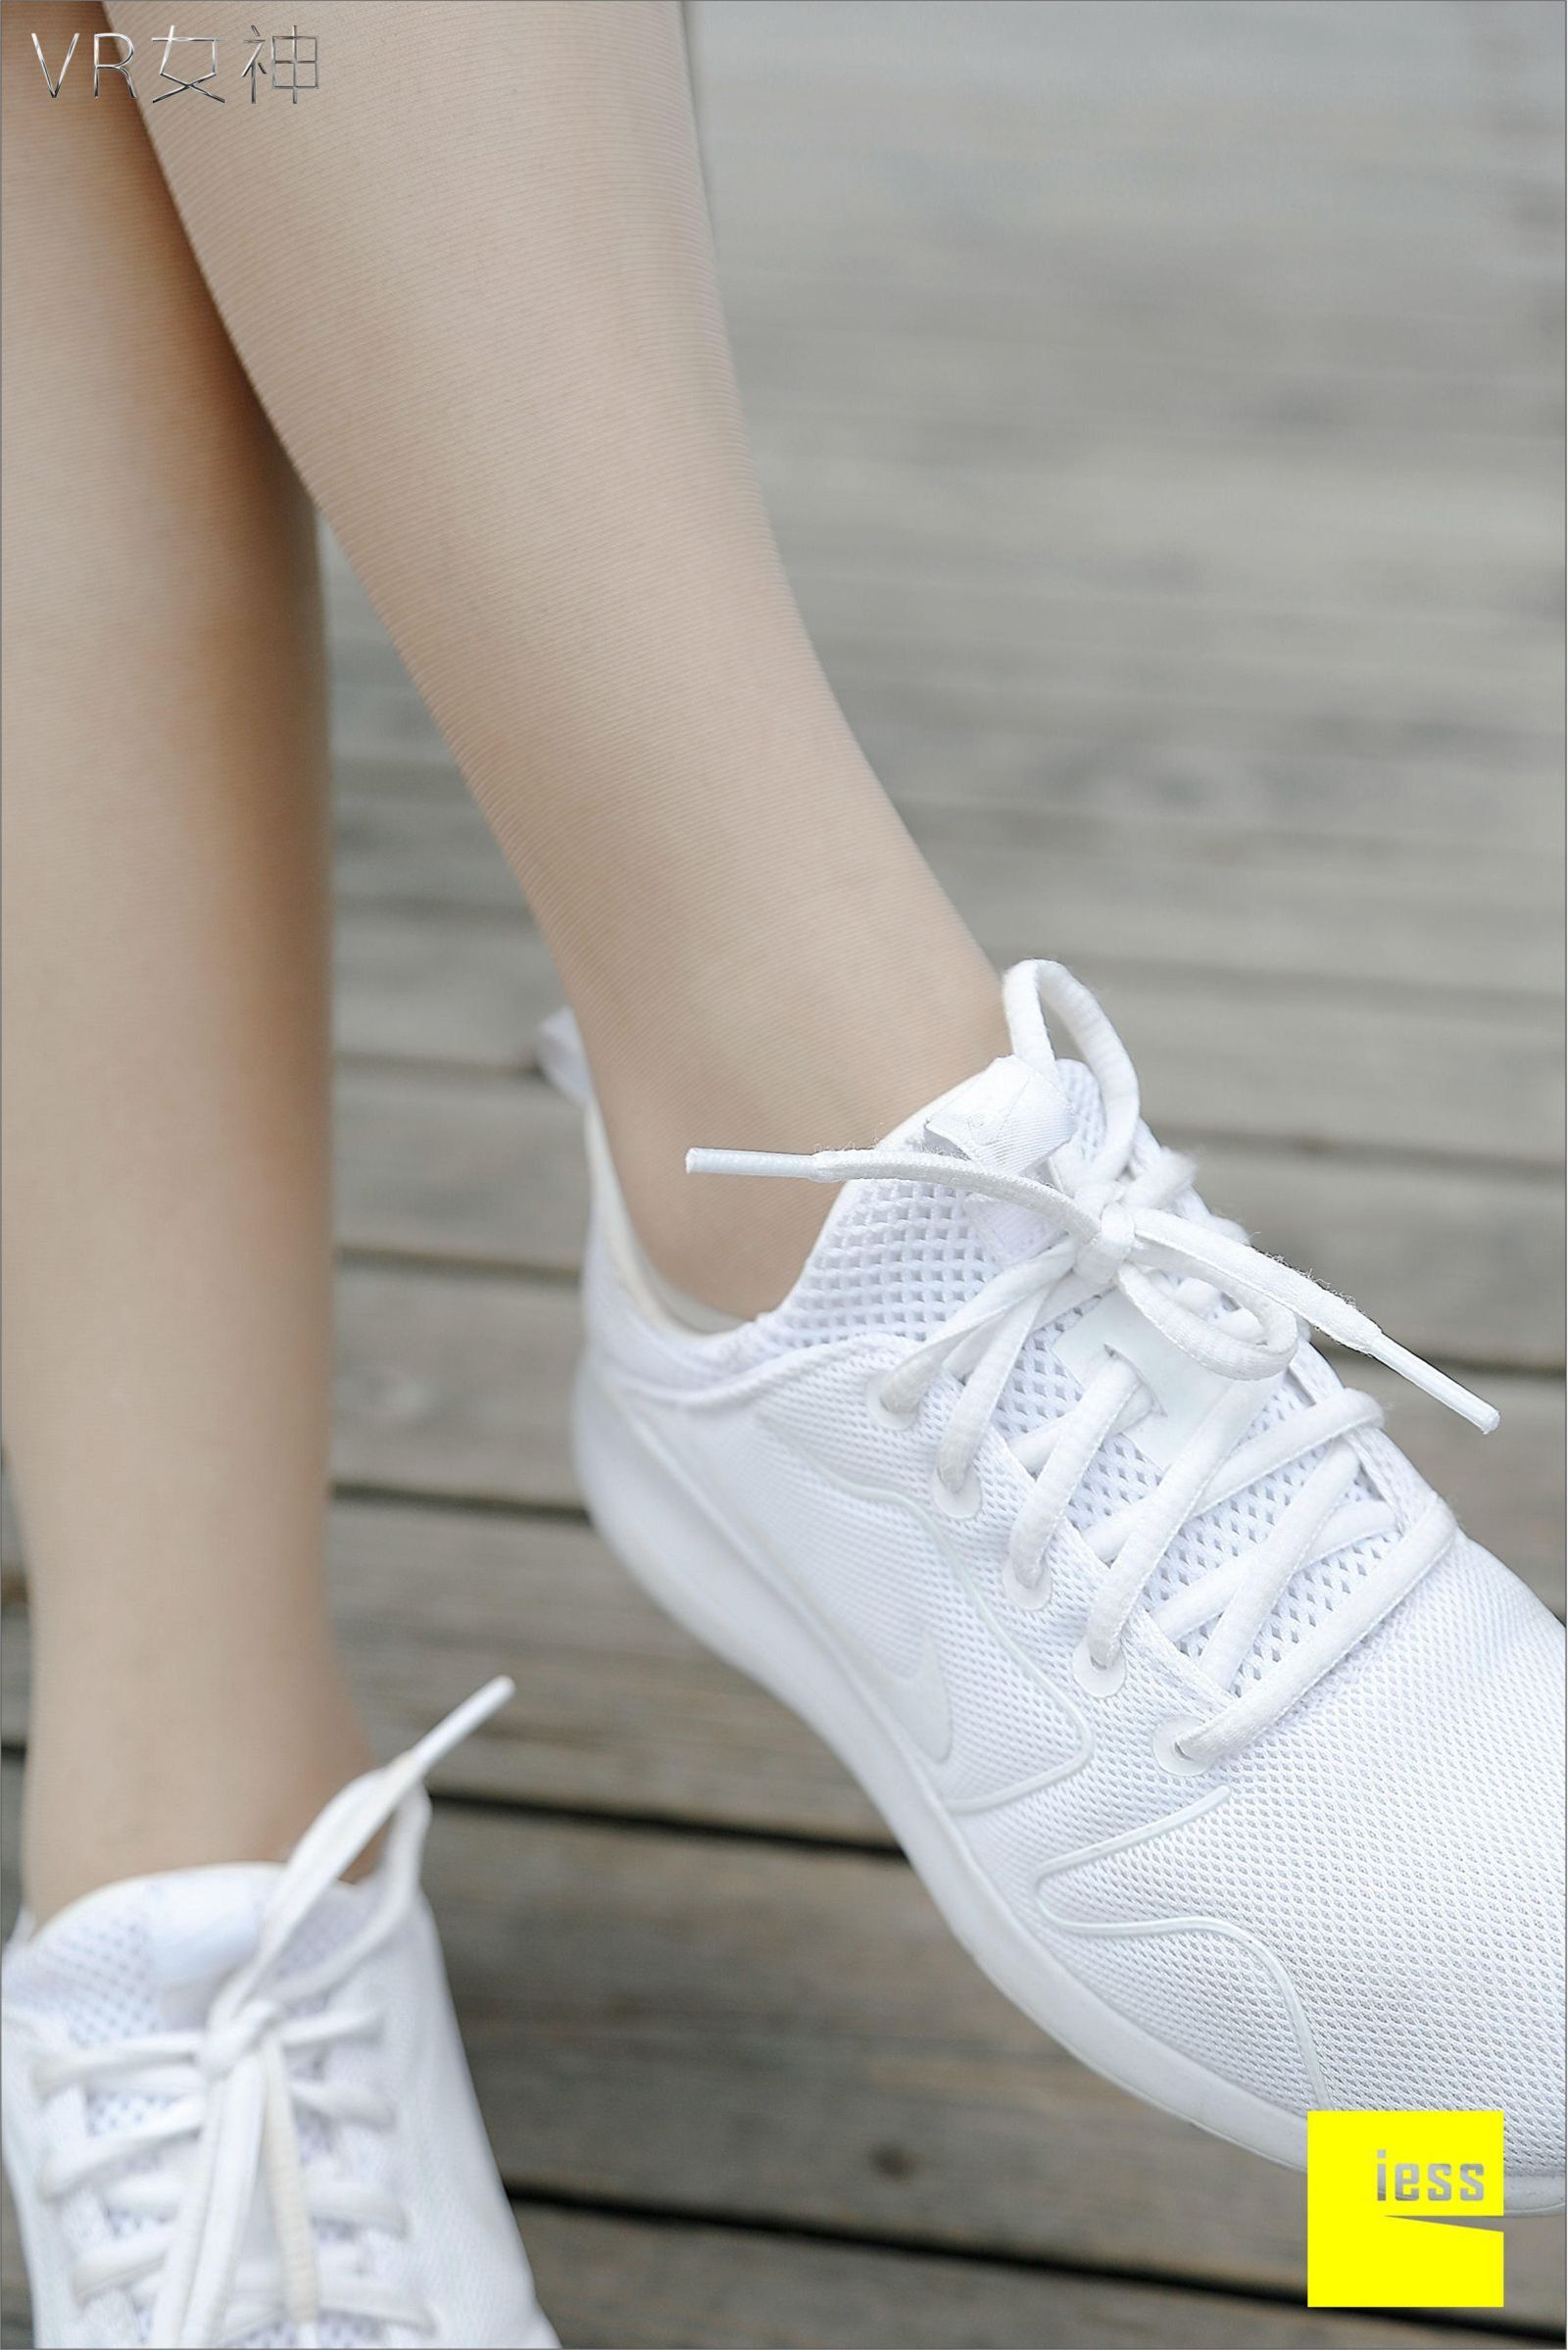 [IESS]异思趣向 女主播SASA 白球鞋的丝足梦游